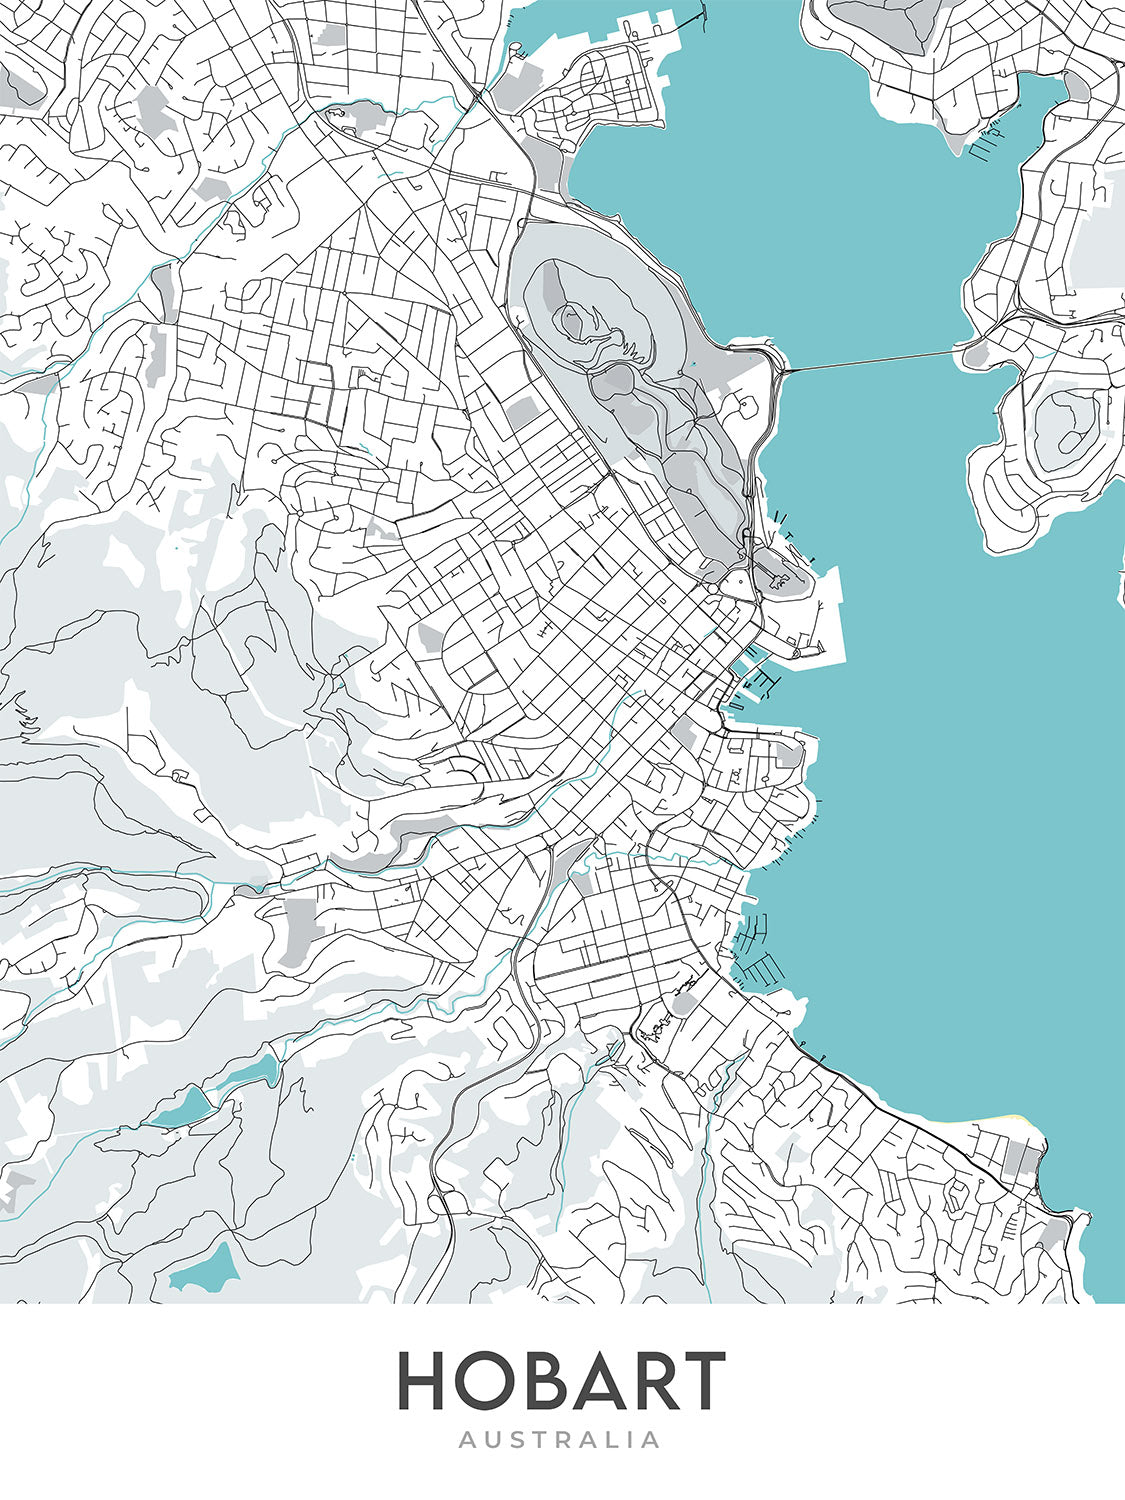 Plan de la ville moderne de Hobart, Australie : Sandy Bay, Battery Point, la cathédrale Saint-David, le musée de Tasmanie, le cénotaphe de Hobart